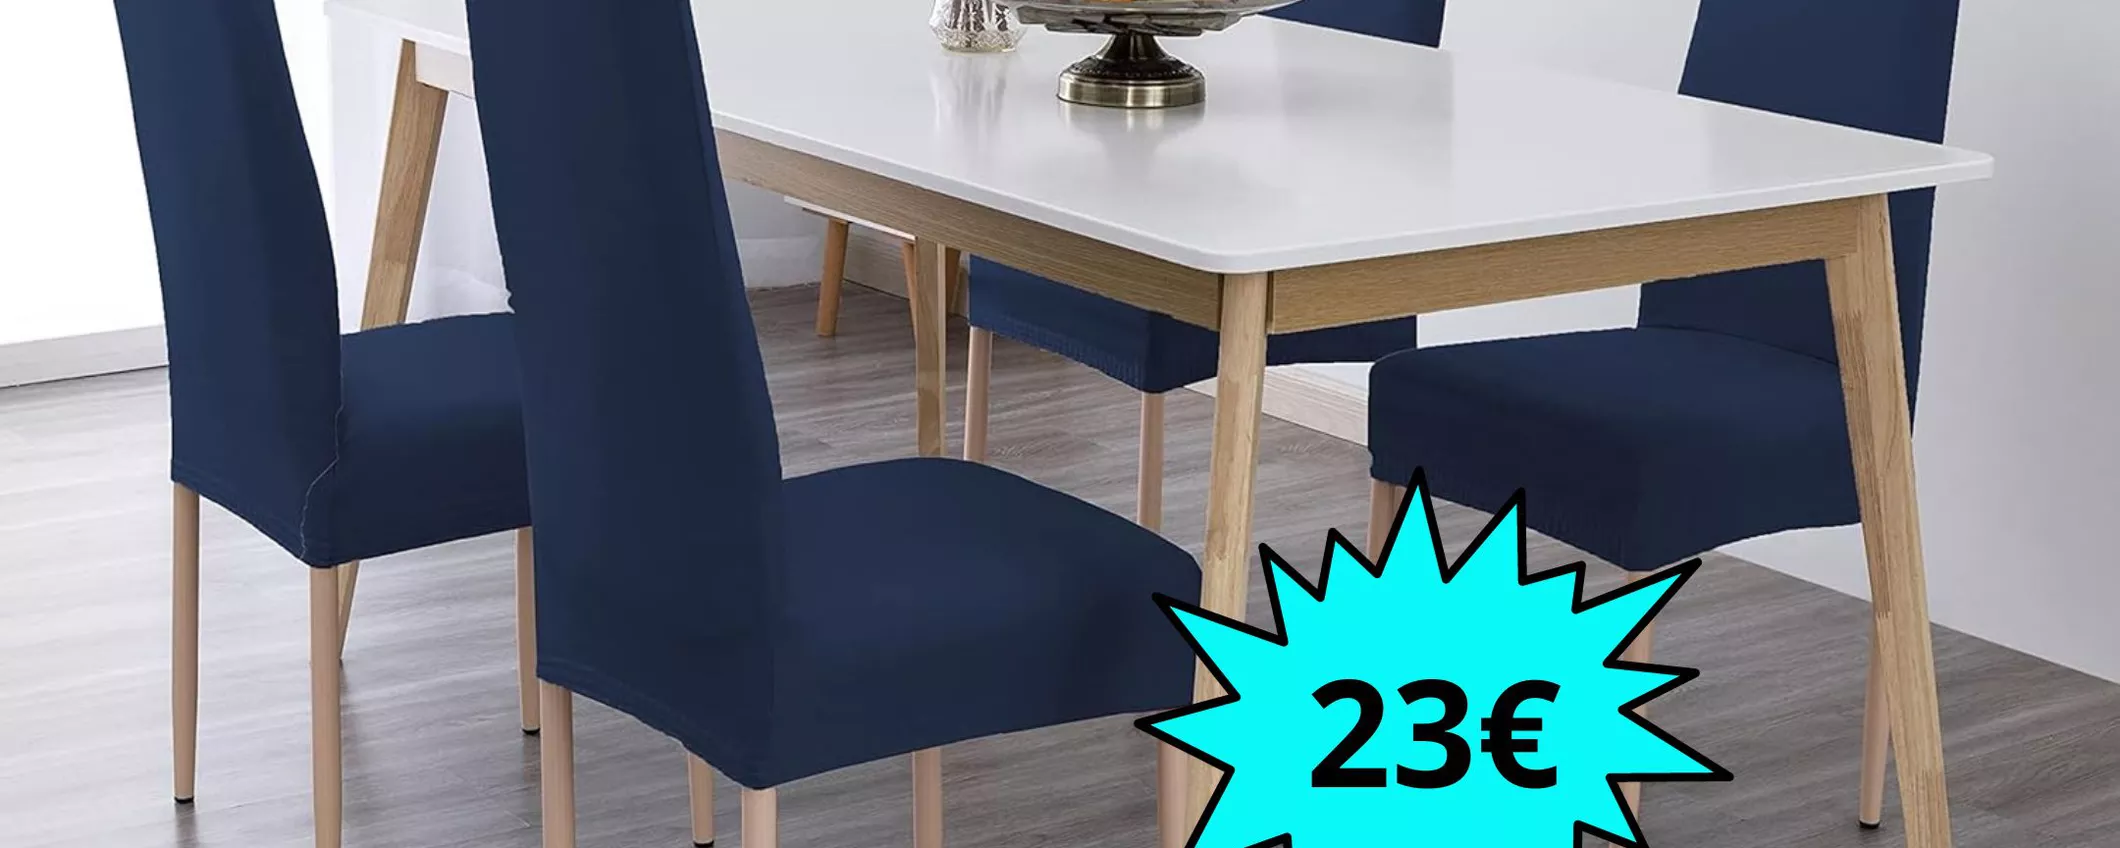 Coprisedie con schienale impermeabile elasticizzato: prendine 6 di colore blu a soli 23 euro!